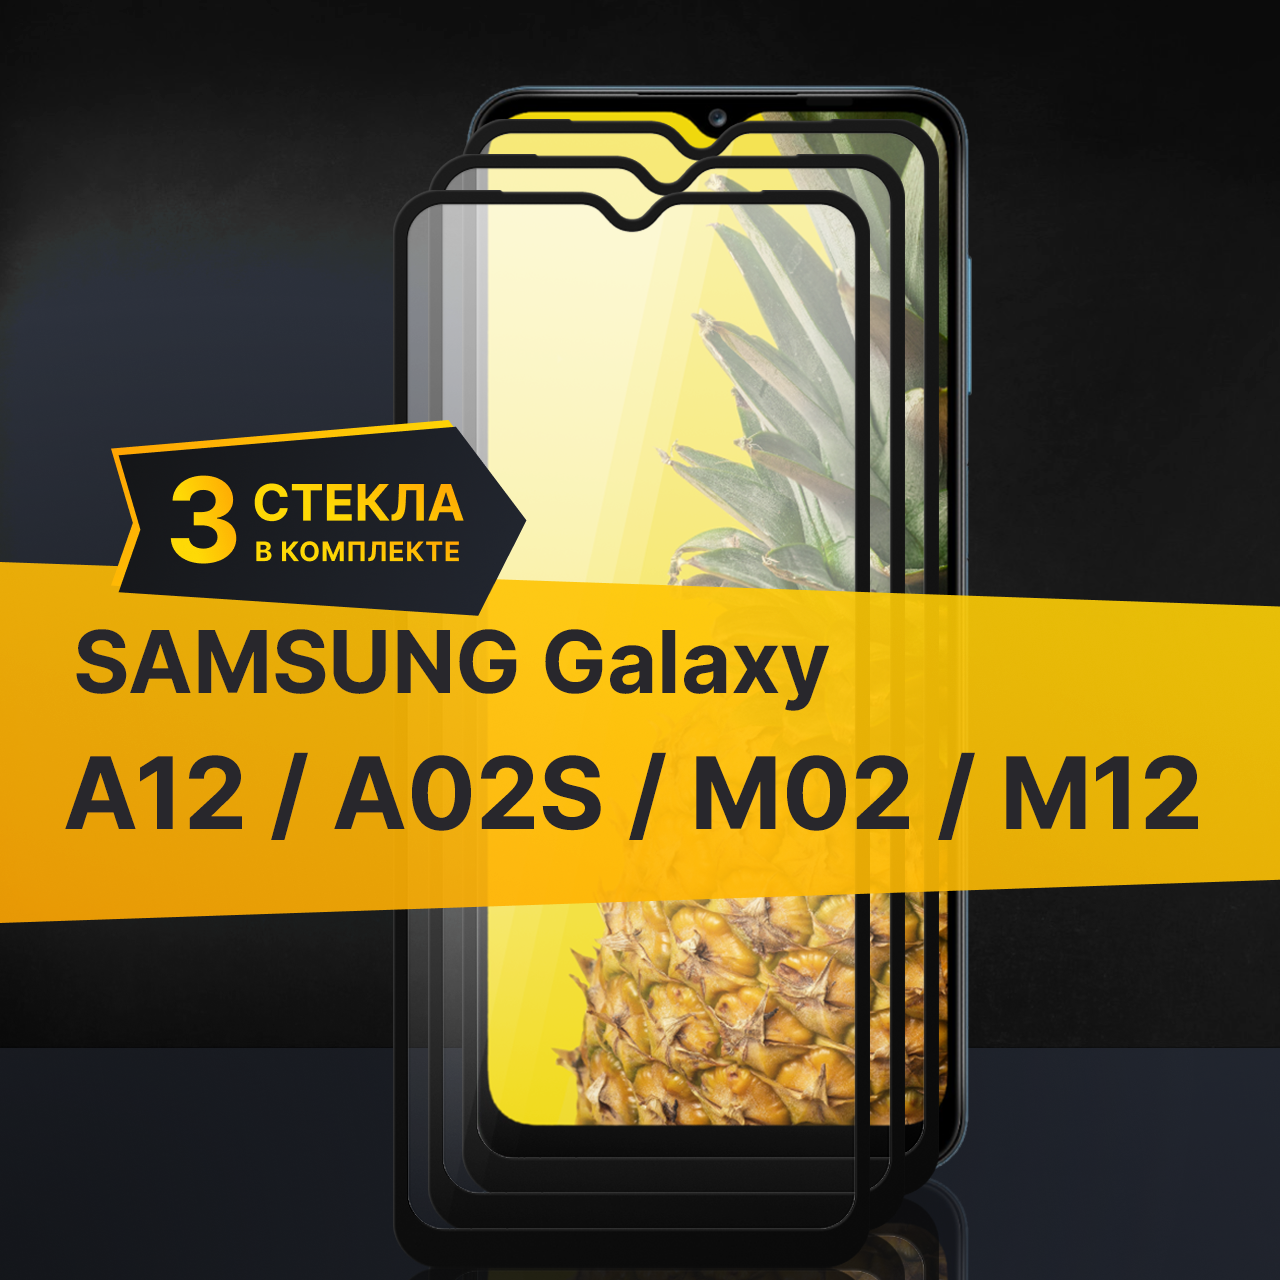 Комплект 3 шт. Противоударное защитное стекло для телефона Samsung Galaxy A12, A02S, M02 и M12 / Полноклеевое 3D стекло с олеофобным покрытием на смартфон Самсунг Галакси А12, А02С, М02 и М12